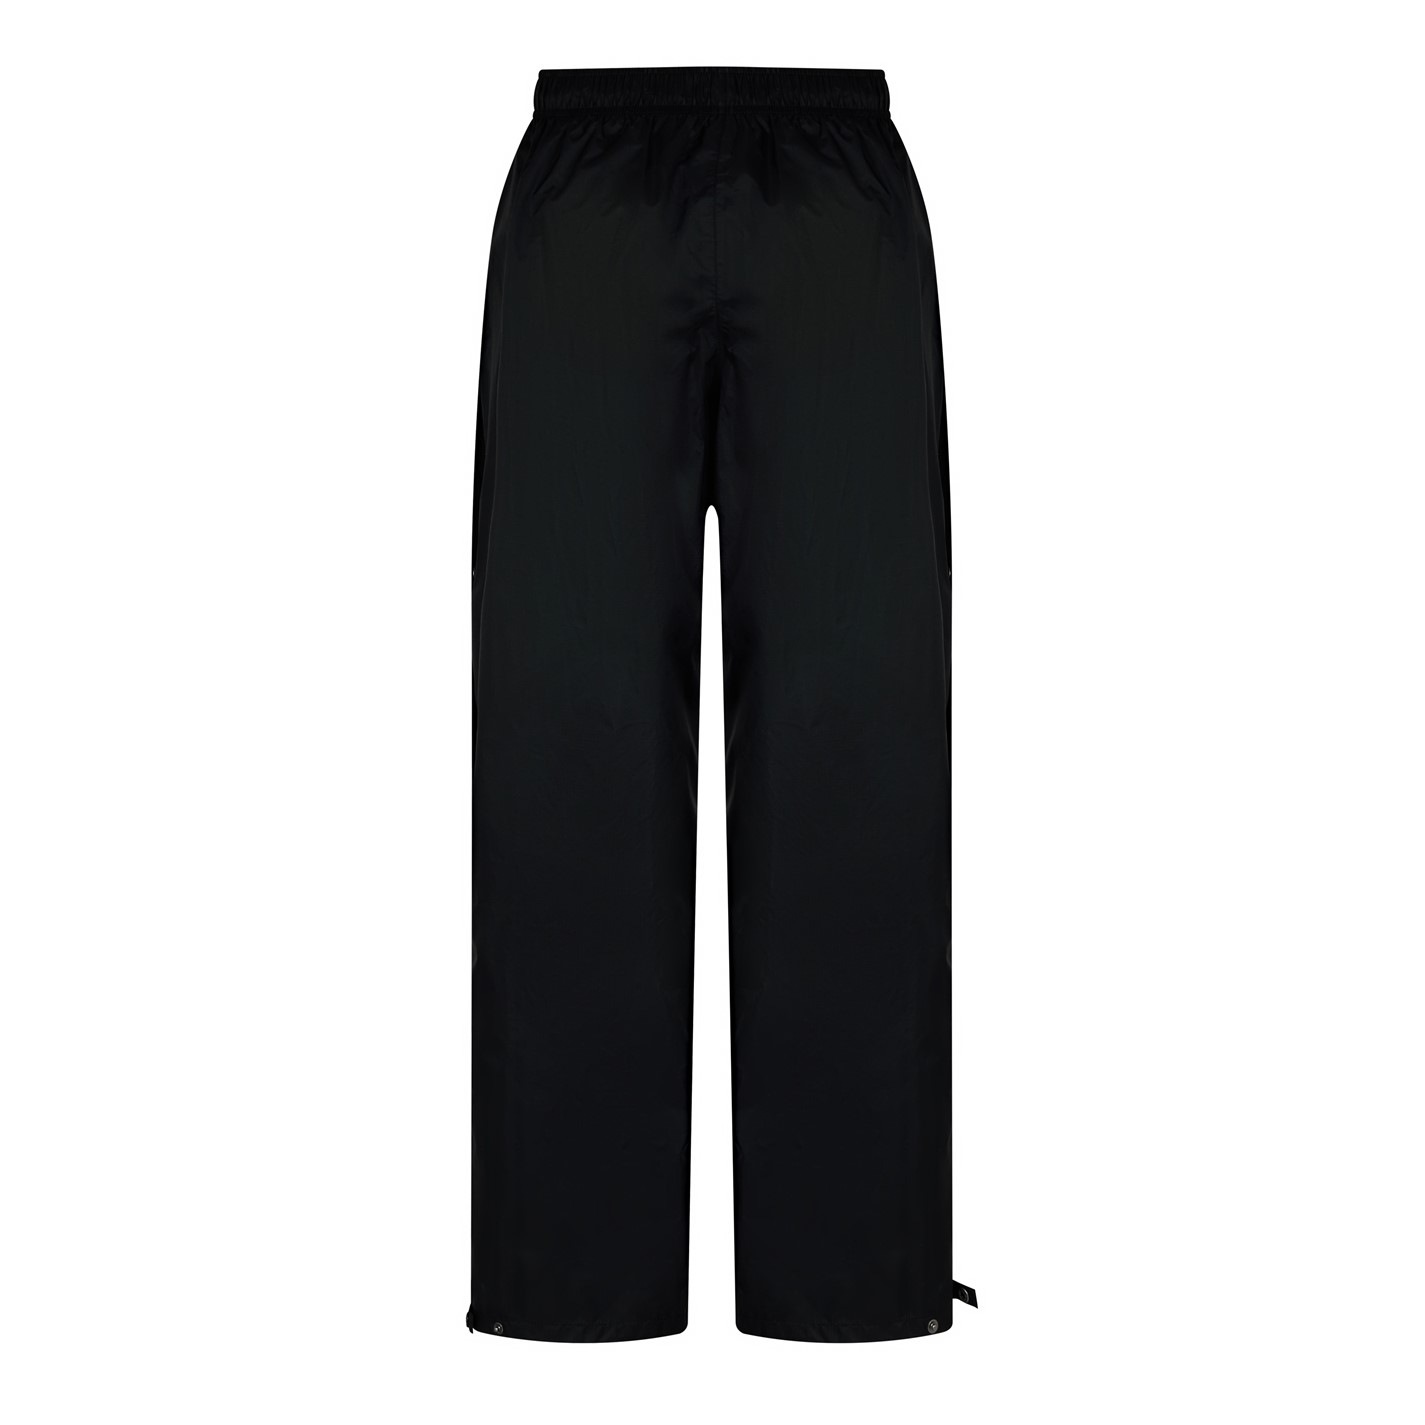 Pantaloni Karrimor Orkney pentru Femei negru